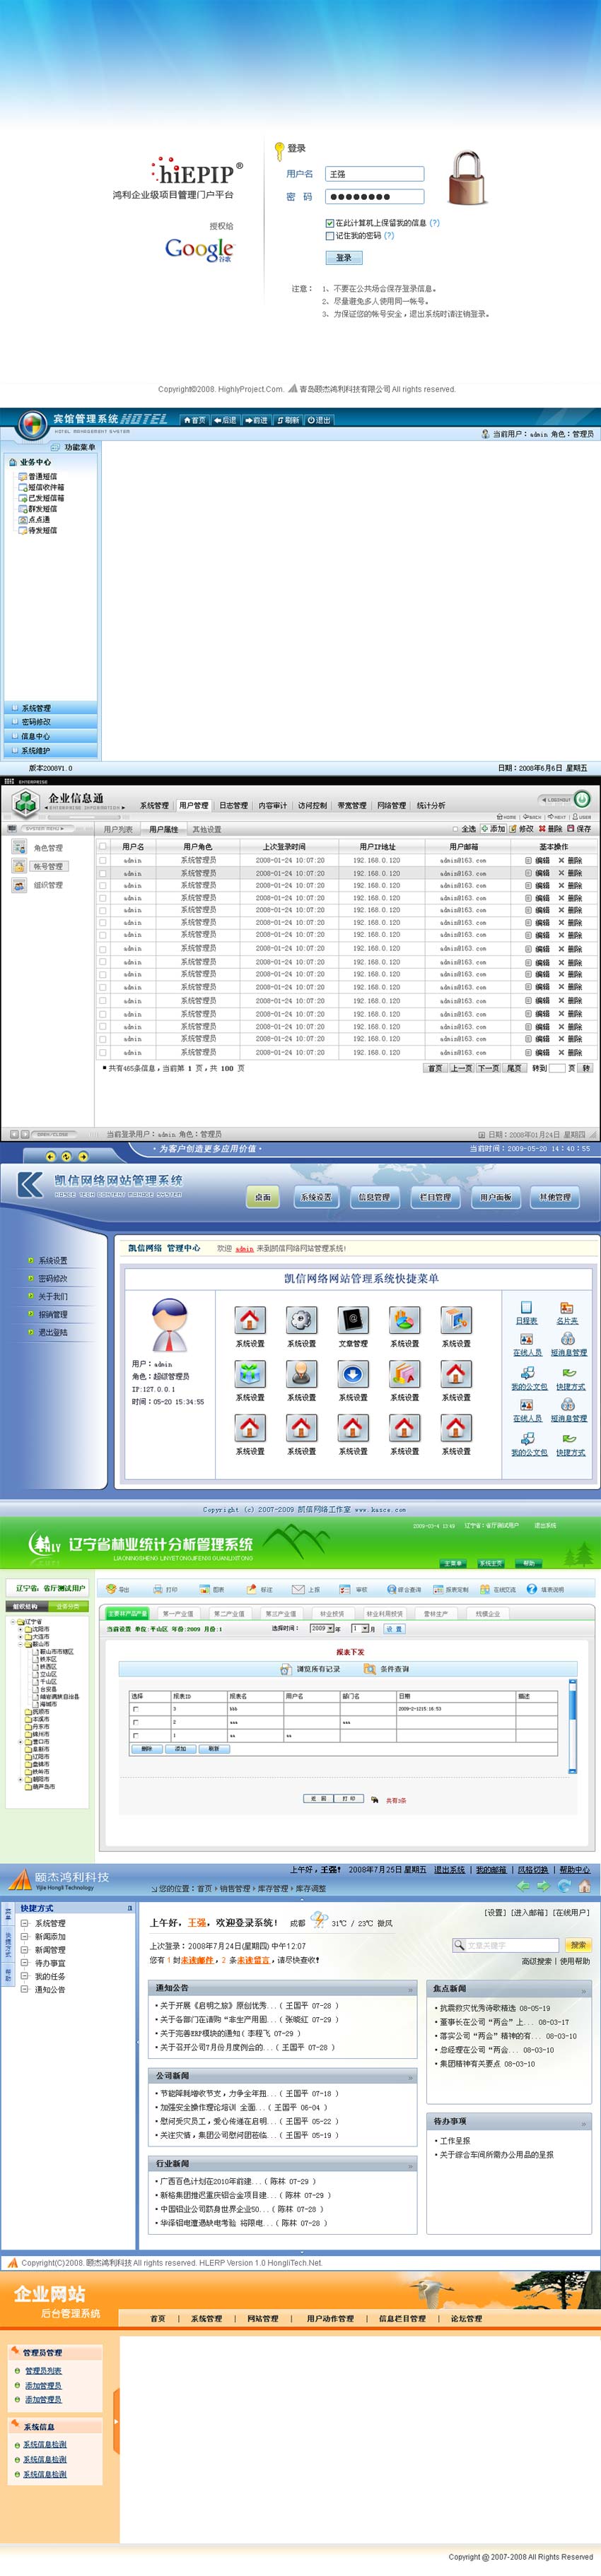 10套中文网站登录和中文网站后台管理界面模板psd下载_网站后台模板